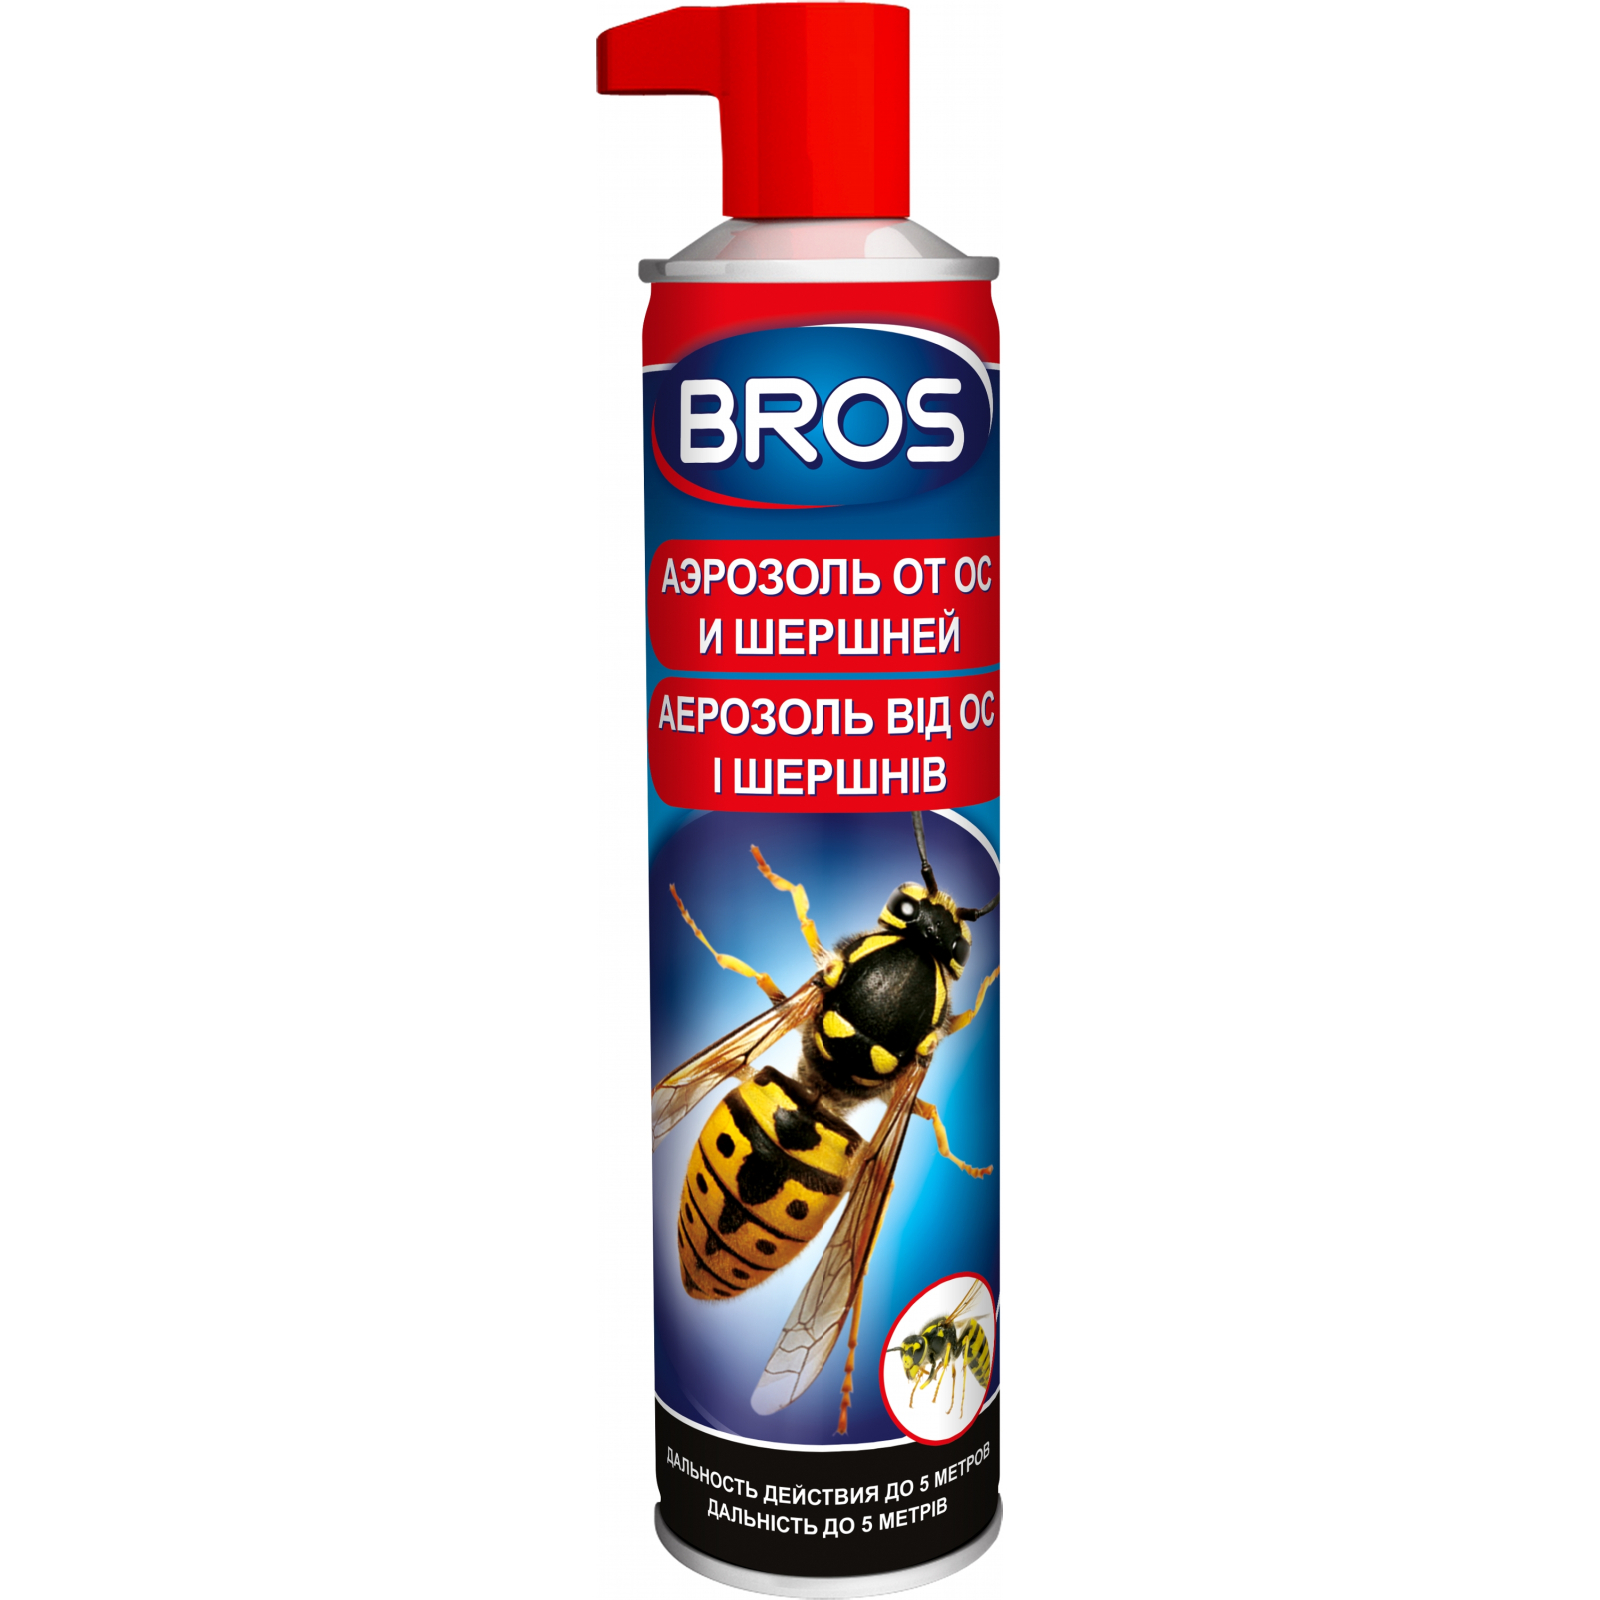 Аэрозоль от насекомых Bros от ос и шершней 300 мл (5904517061484)